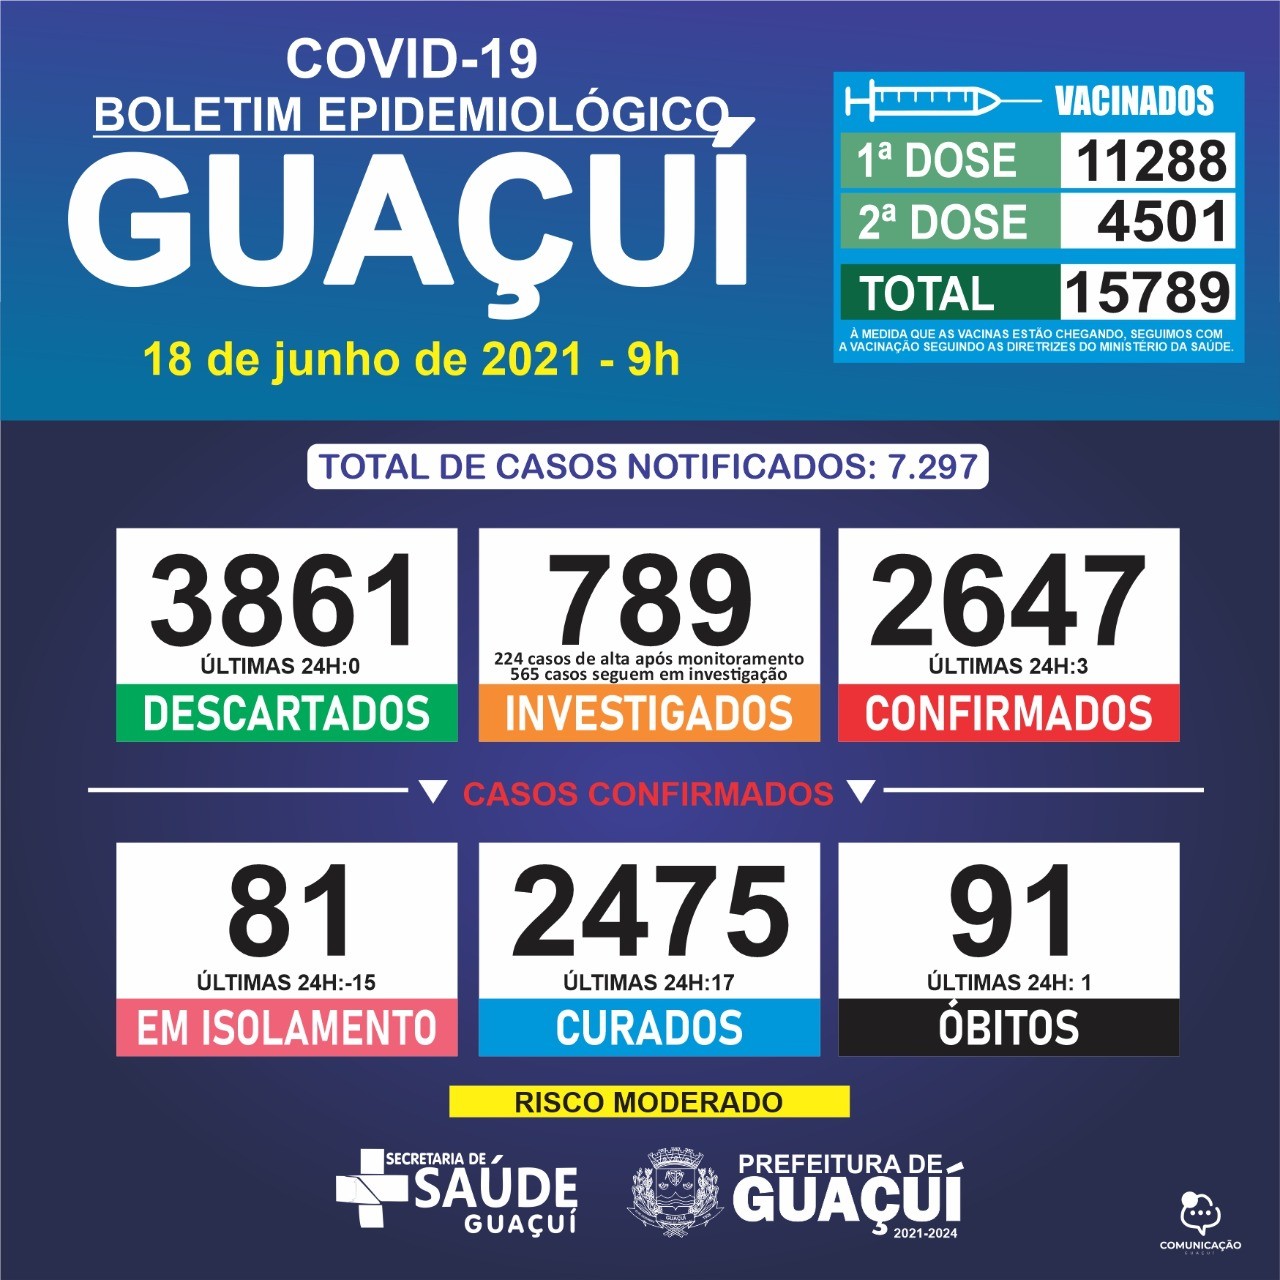 Boletim Epidemiológico 18/06/21: Guaçuí registra 1 óbito, 3 casos confirmados e 17 curados nas últimas 24 horas